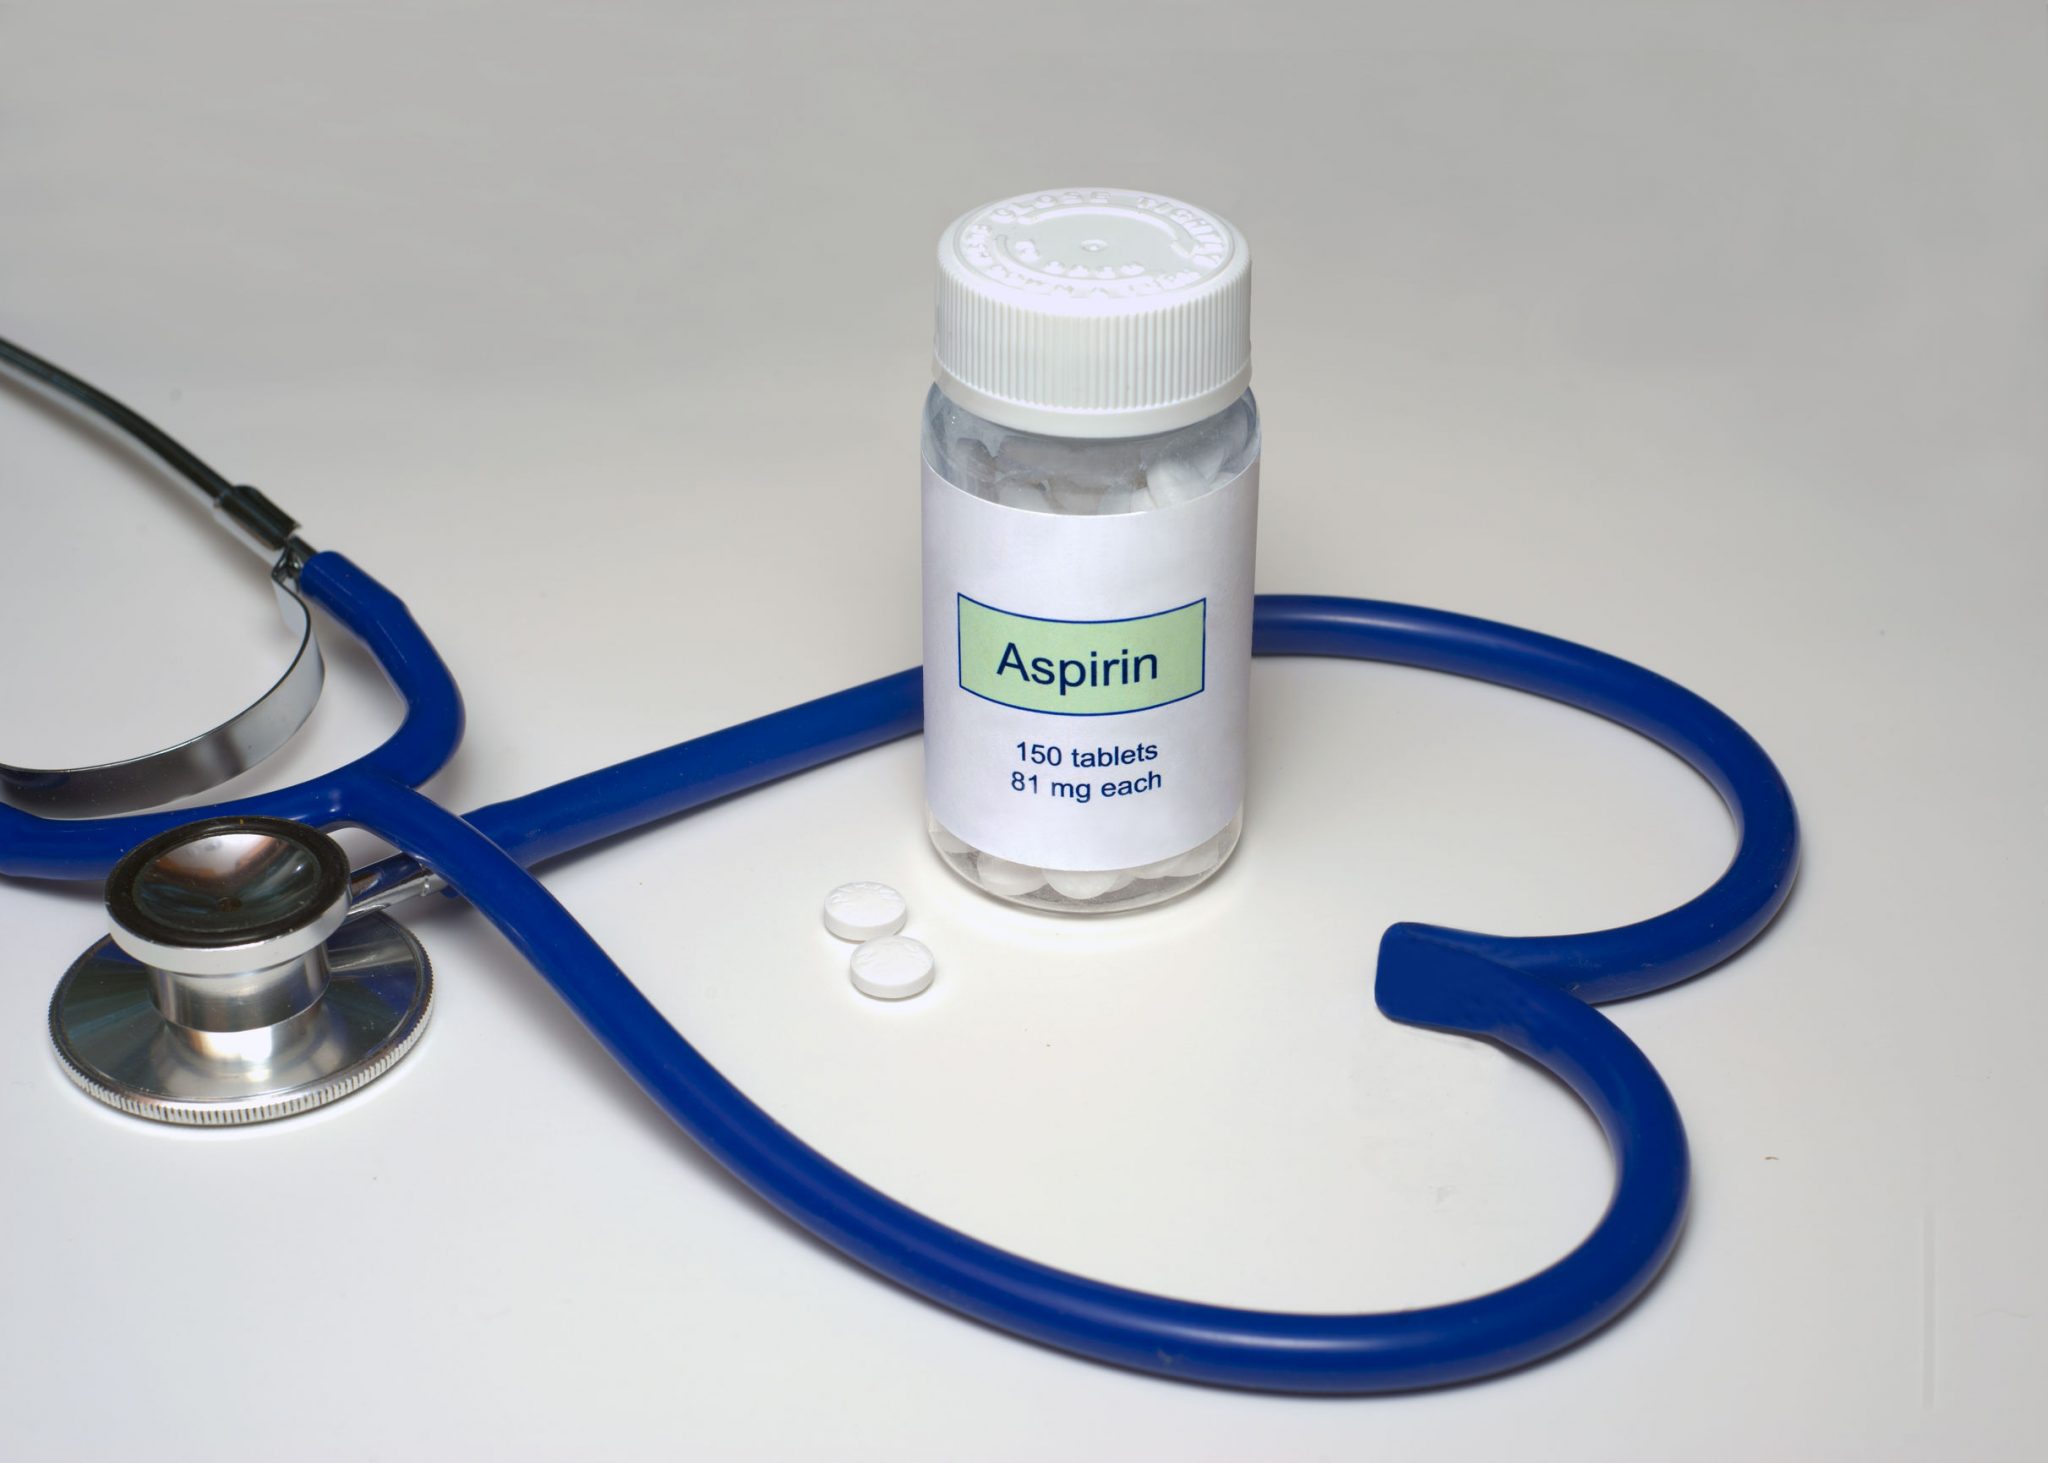 Low dose Aspirin